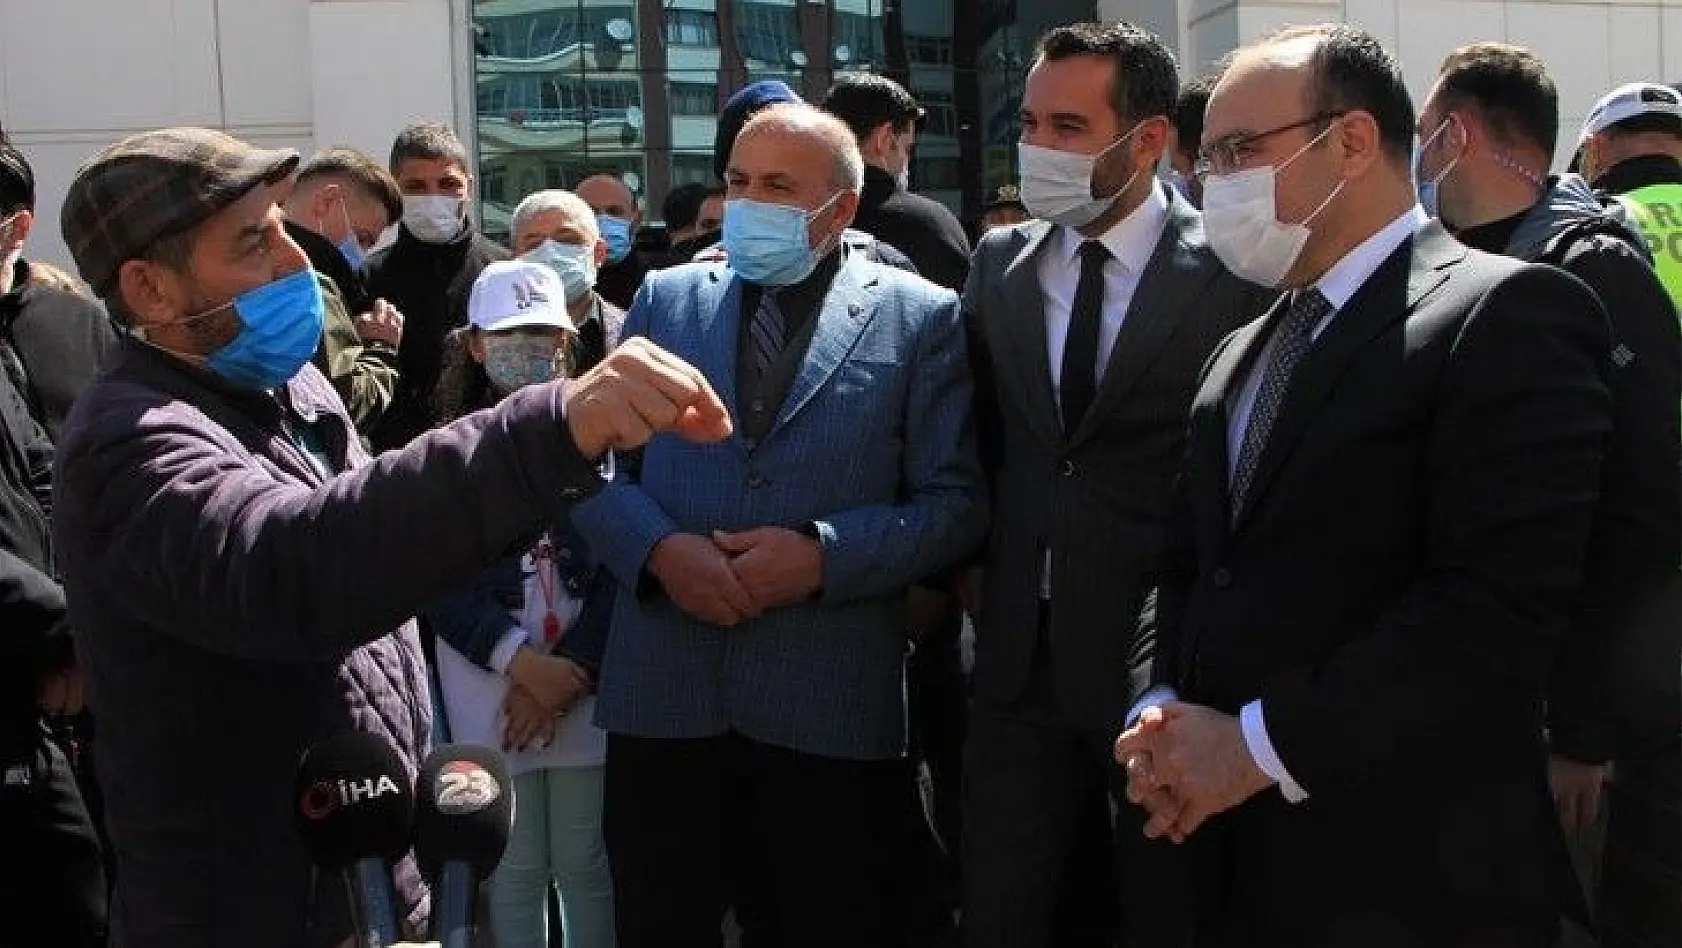 Elazığ'da vatandaşın protokolle diyaloğu herkese kahkaha attırdı